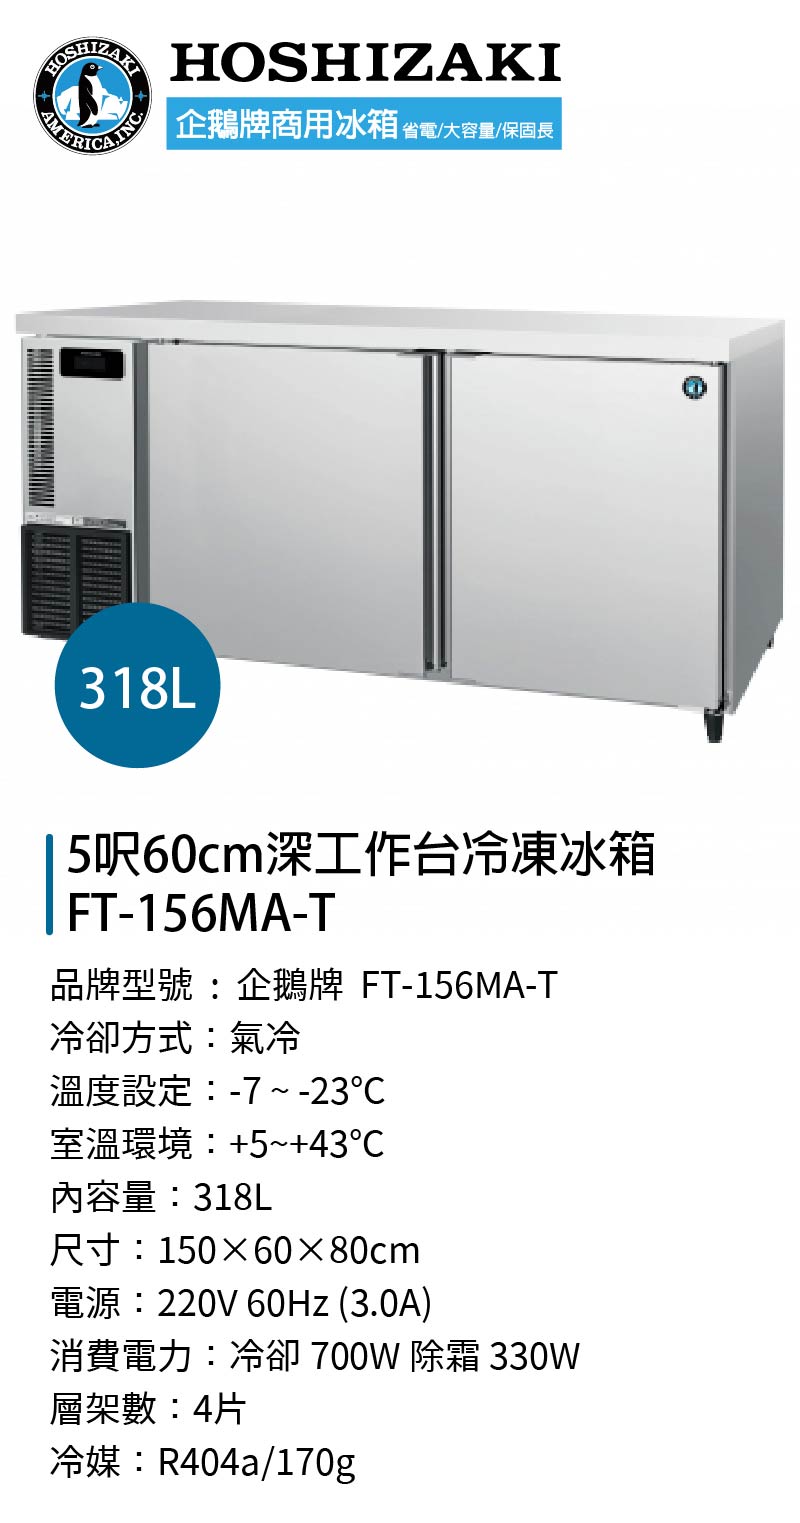 5呎60cm深工作台冷凍冰箱